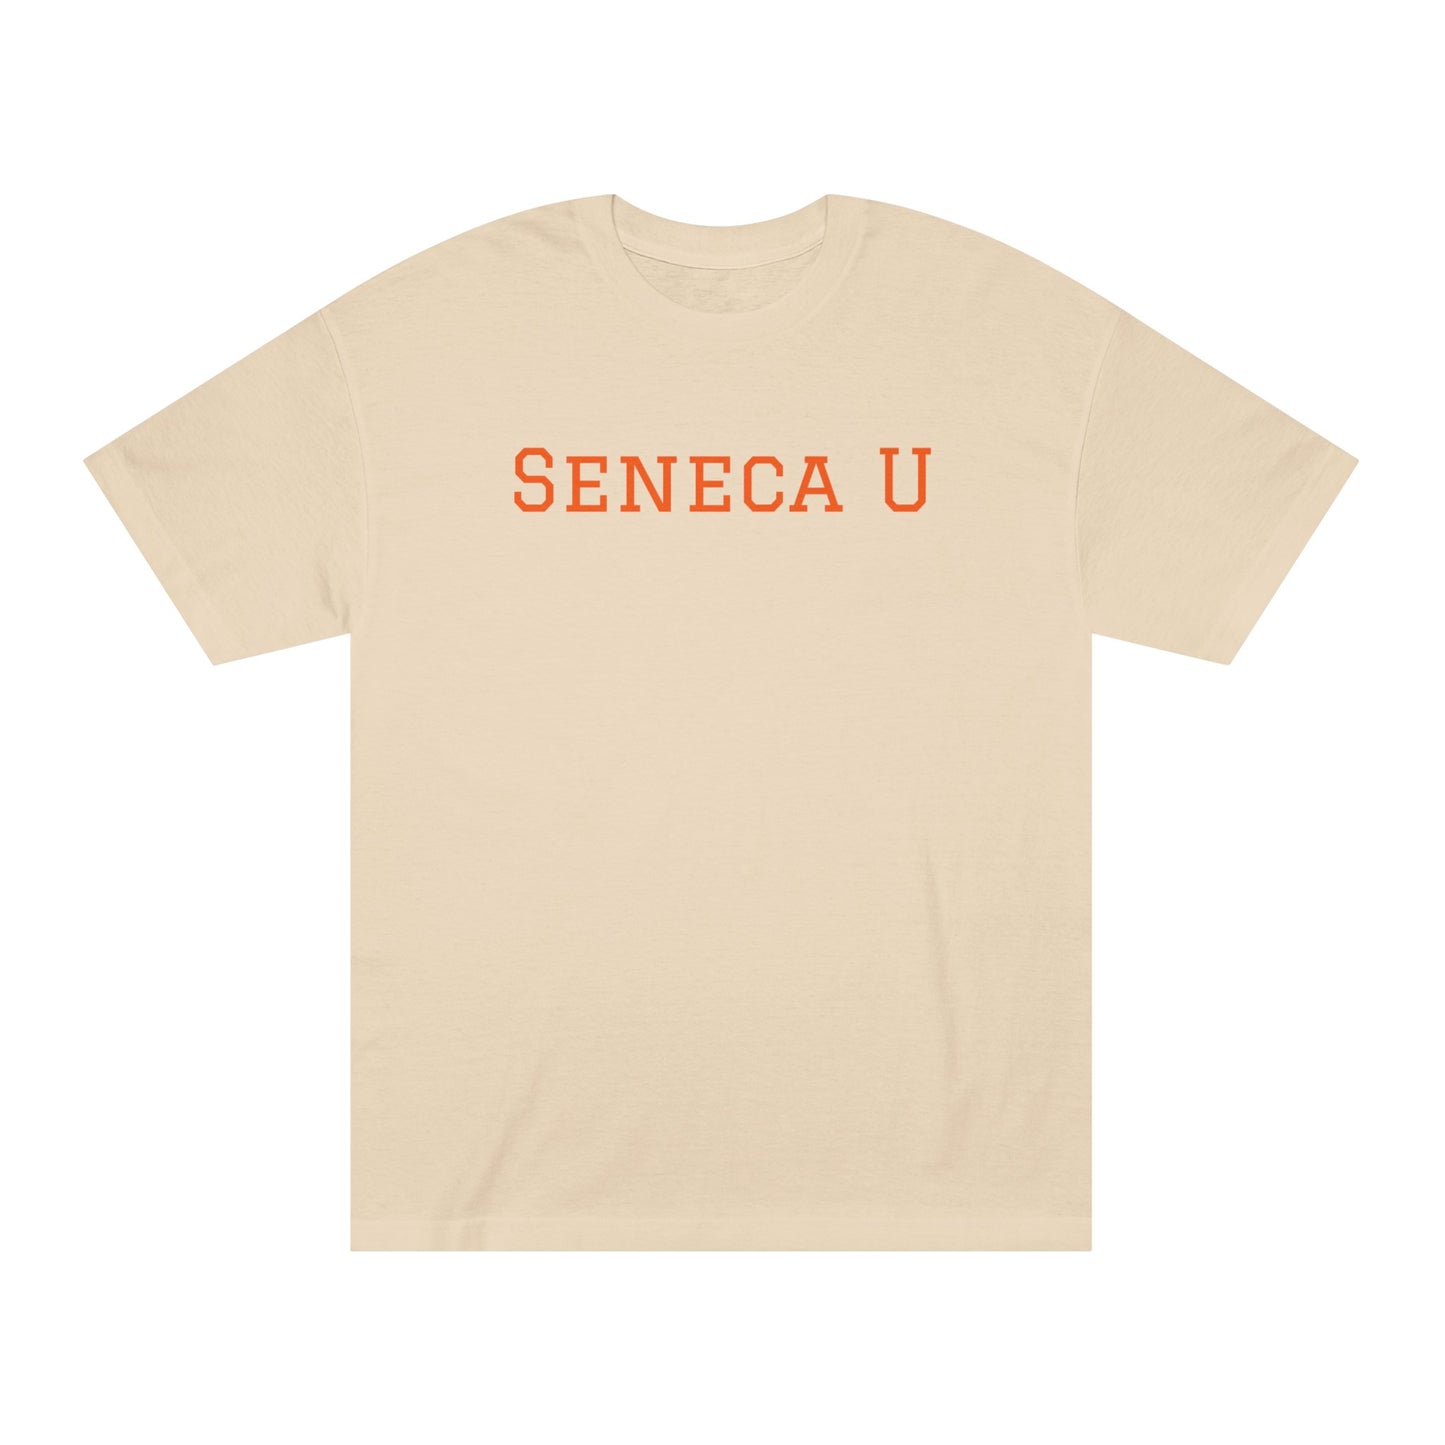 Seneca U Tee